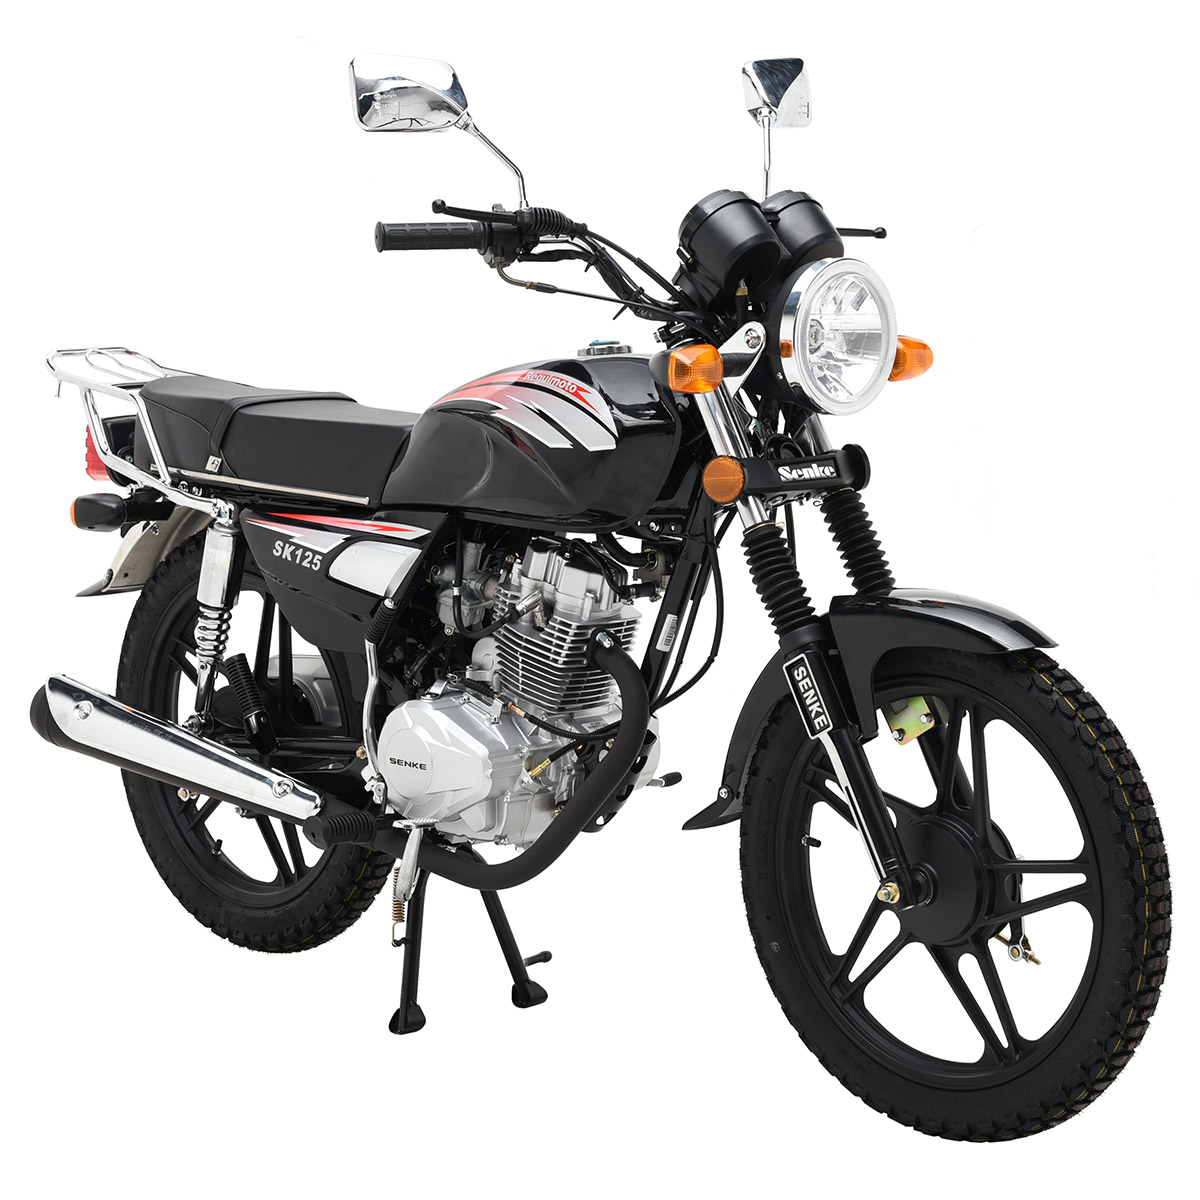 картинка Мотоцикл Regulmoto SK-125 | Moped24